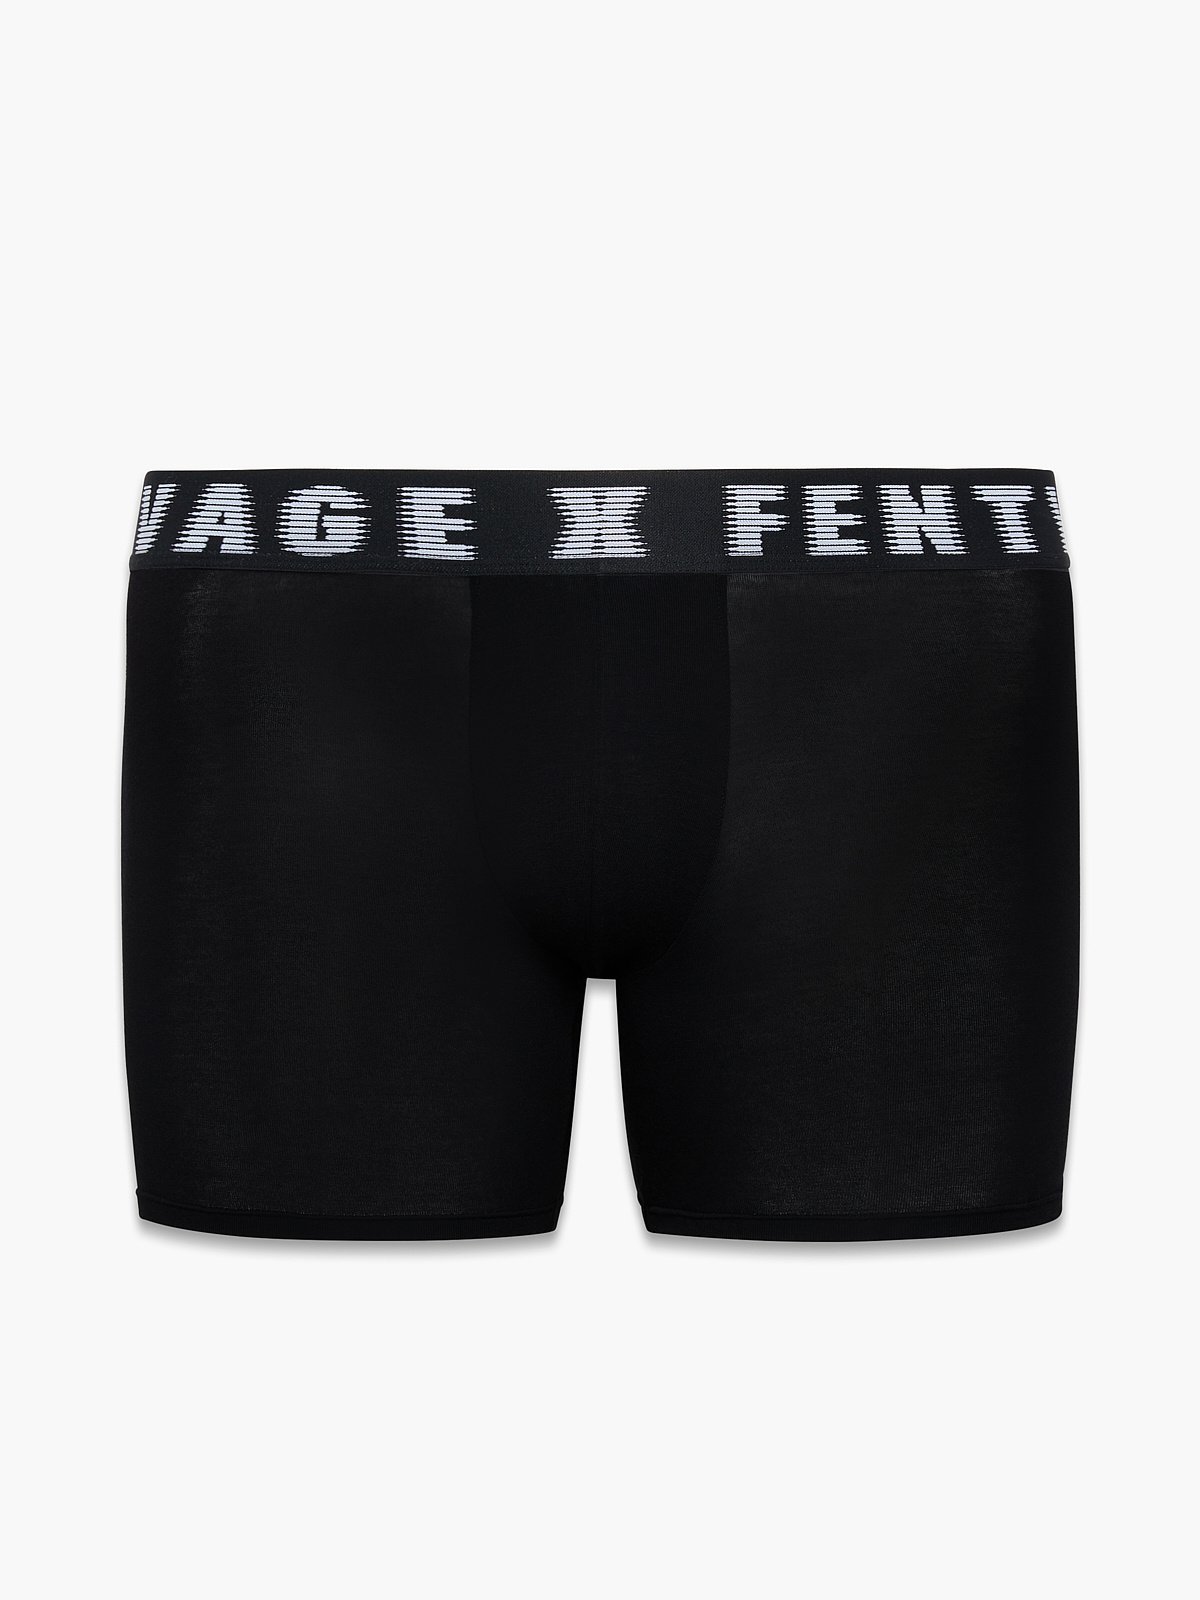 Savage X Boxer Briefs in Black | SAVAGE X FENTY